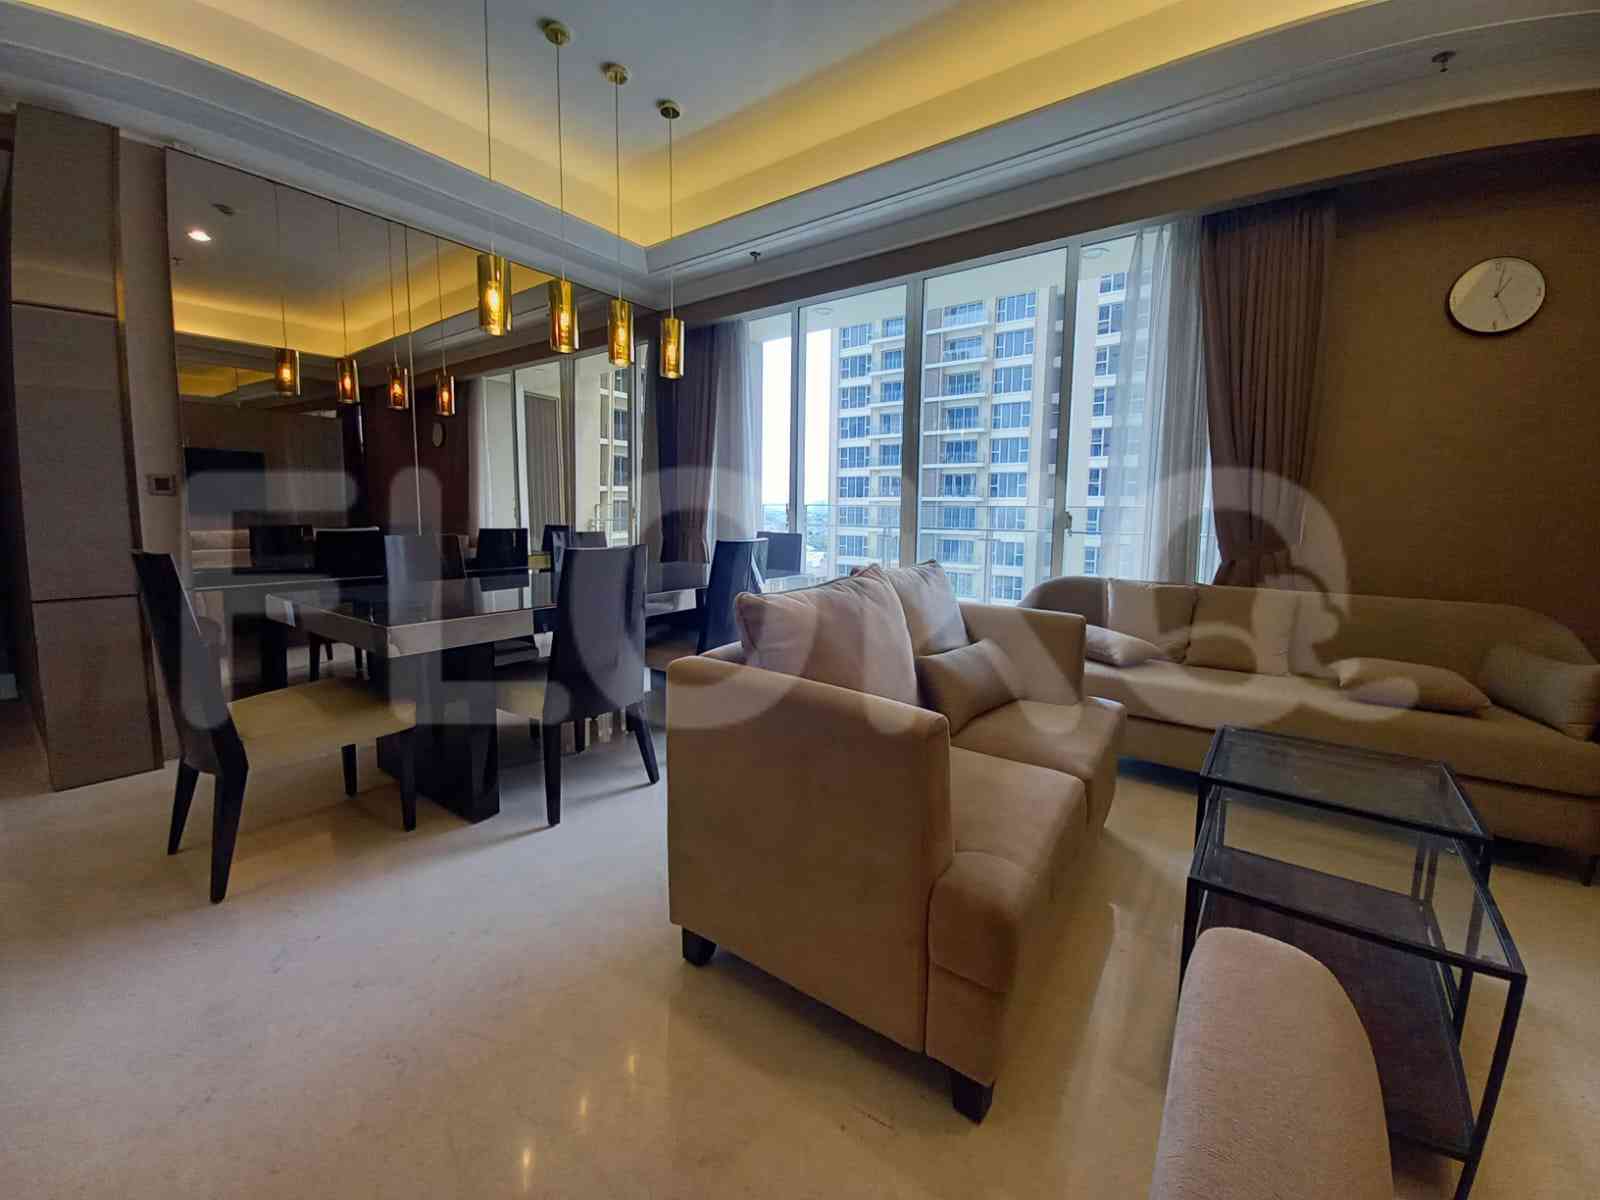 3 Bedroom on 8th Floor for Rent in Pondok Indah Residence - fpo70b 2